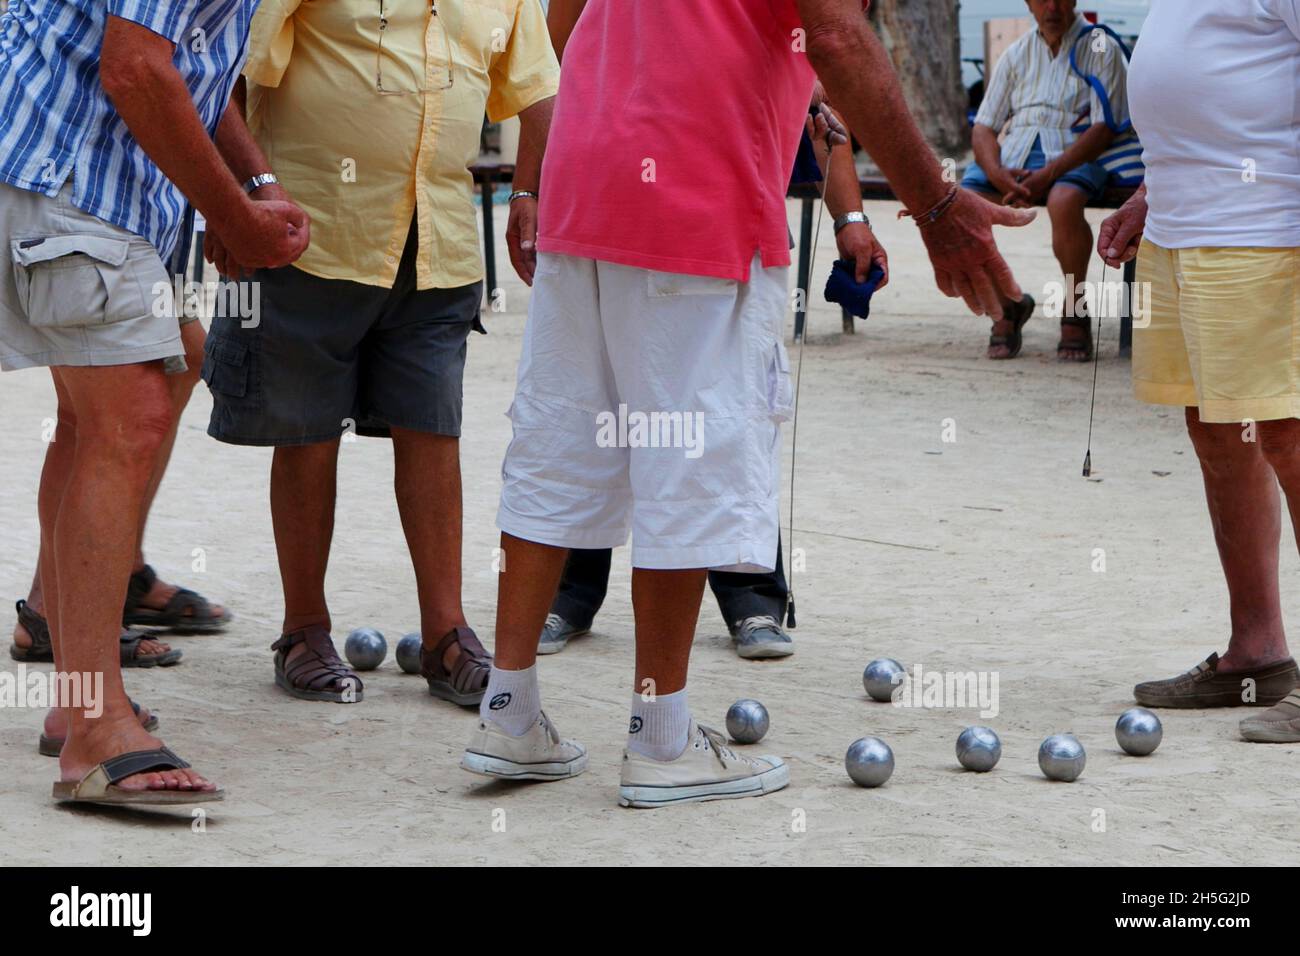 Franzosen, die gerade -auf einem öffentlichen Platz- Boule spielen. Keine Erkennbarkeit, da nur Beine. Cannes, Frankreich. Foto de stock